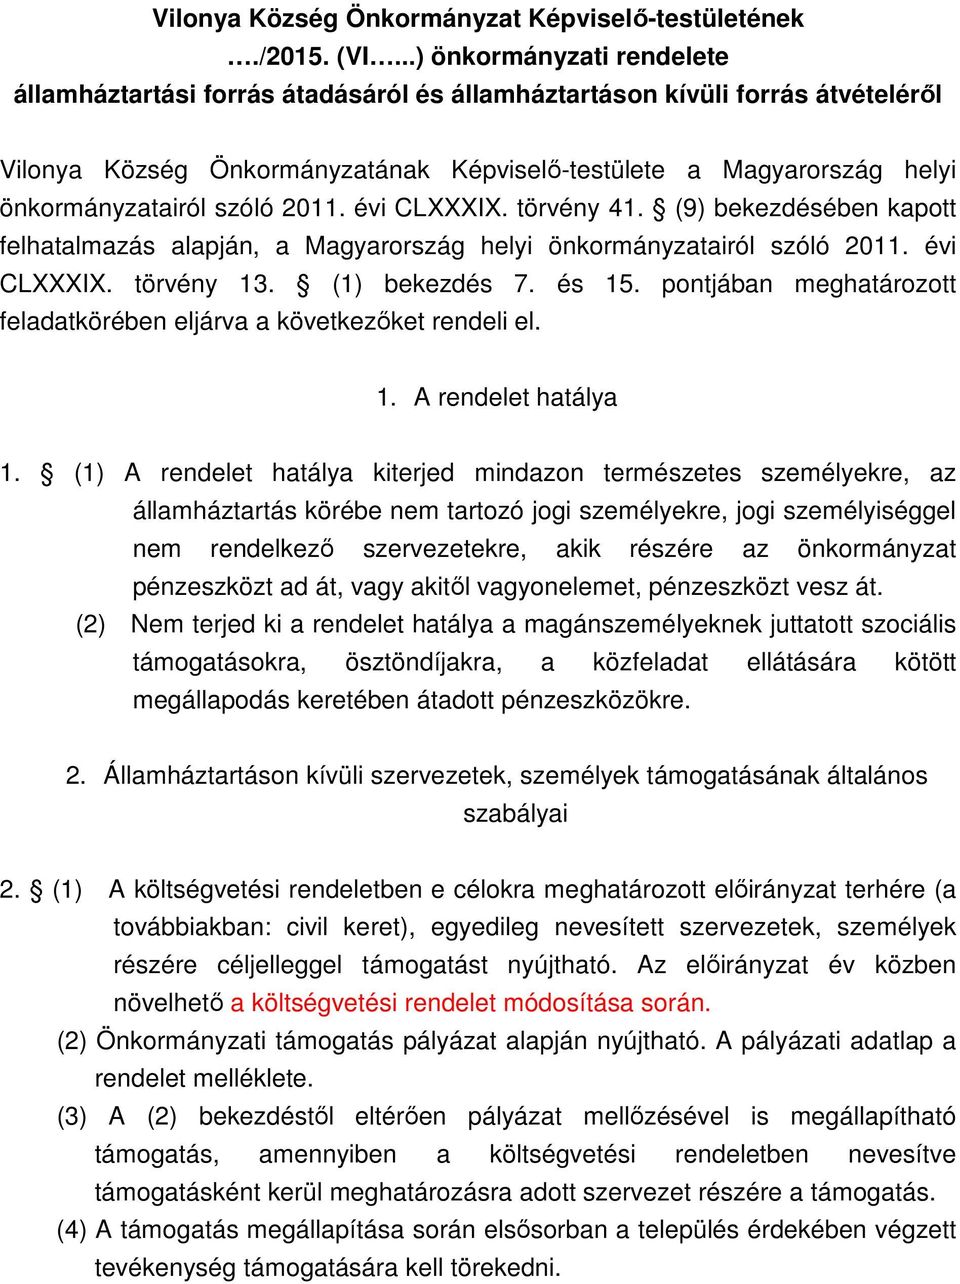 szóló 2011. évi CLXXXIX. törvény 41. (9) bekezdésében kapott felhatalmazás alapján, a Magyarország helyi önkormányzatairól szóló 2011. évi CLXXXIX. törvény 13. (1) bekezdés 7. és 15.